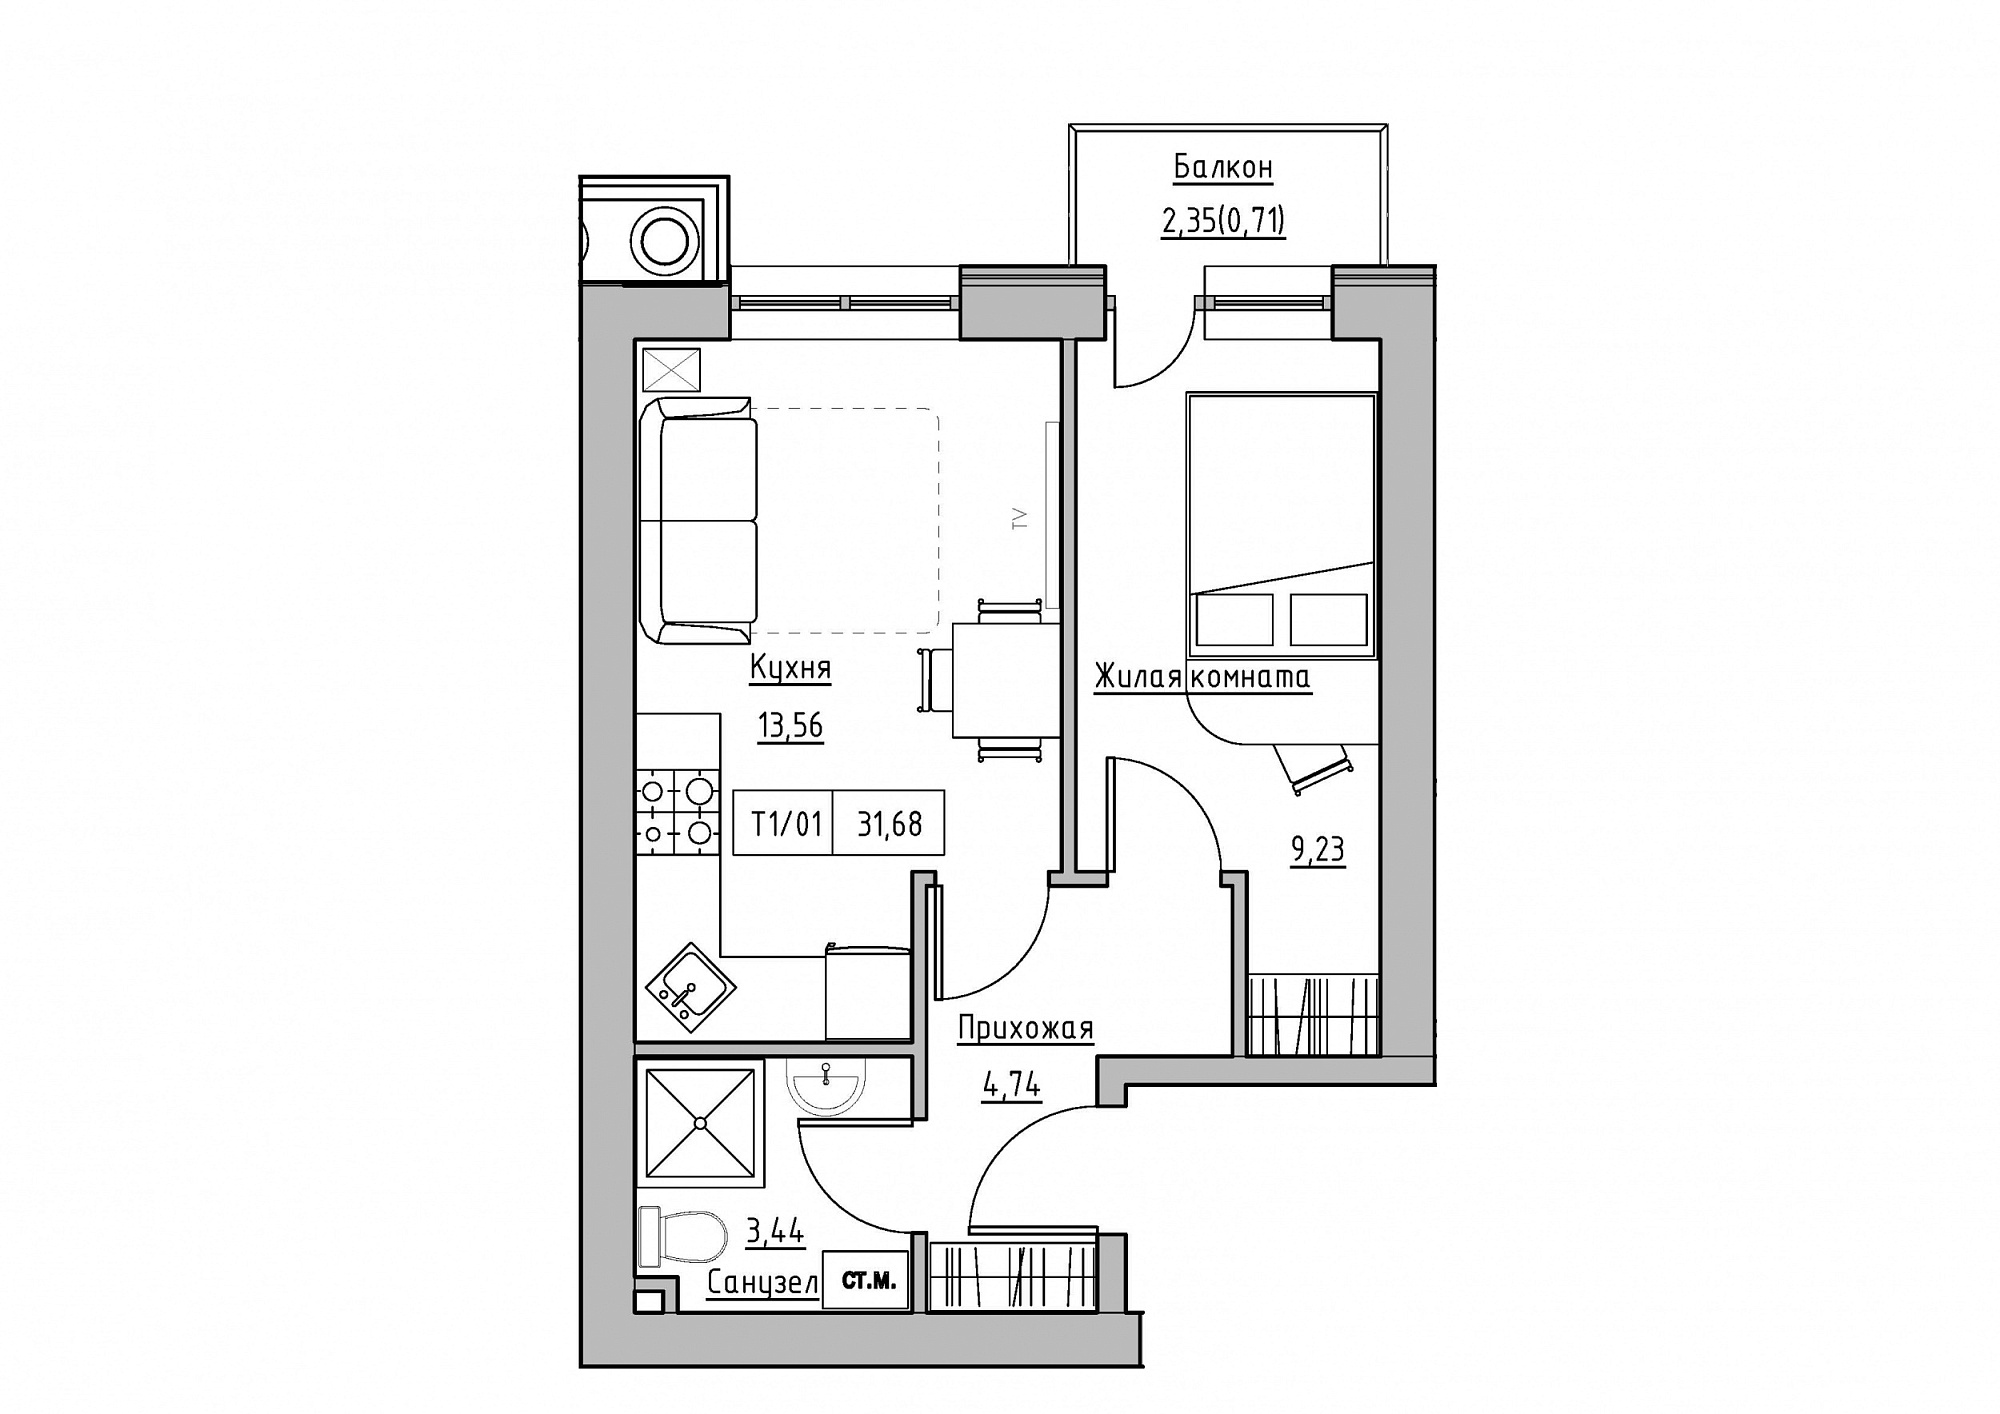 Планування 1-к квартира площею 31.68м2, KS-011-04/0013.